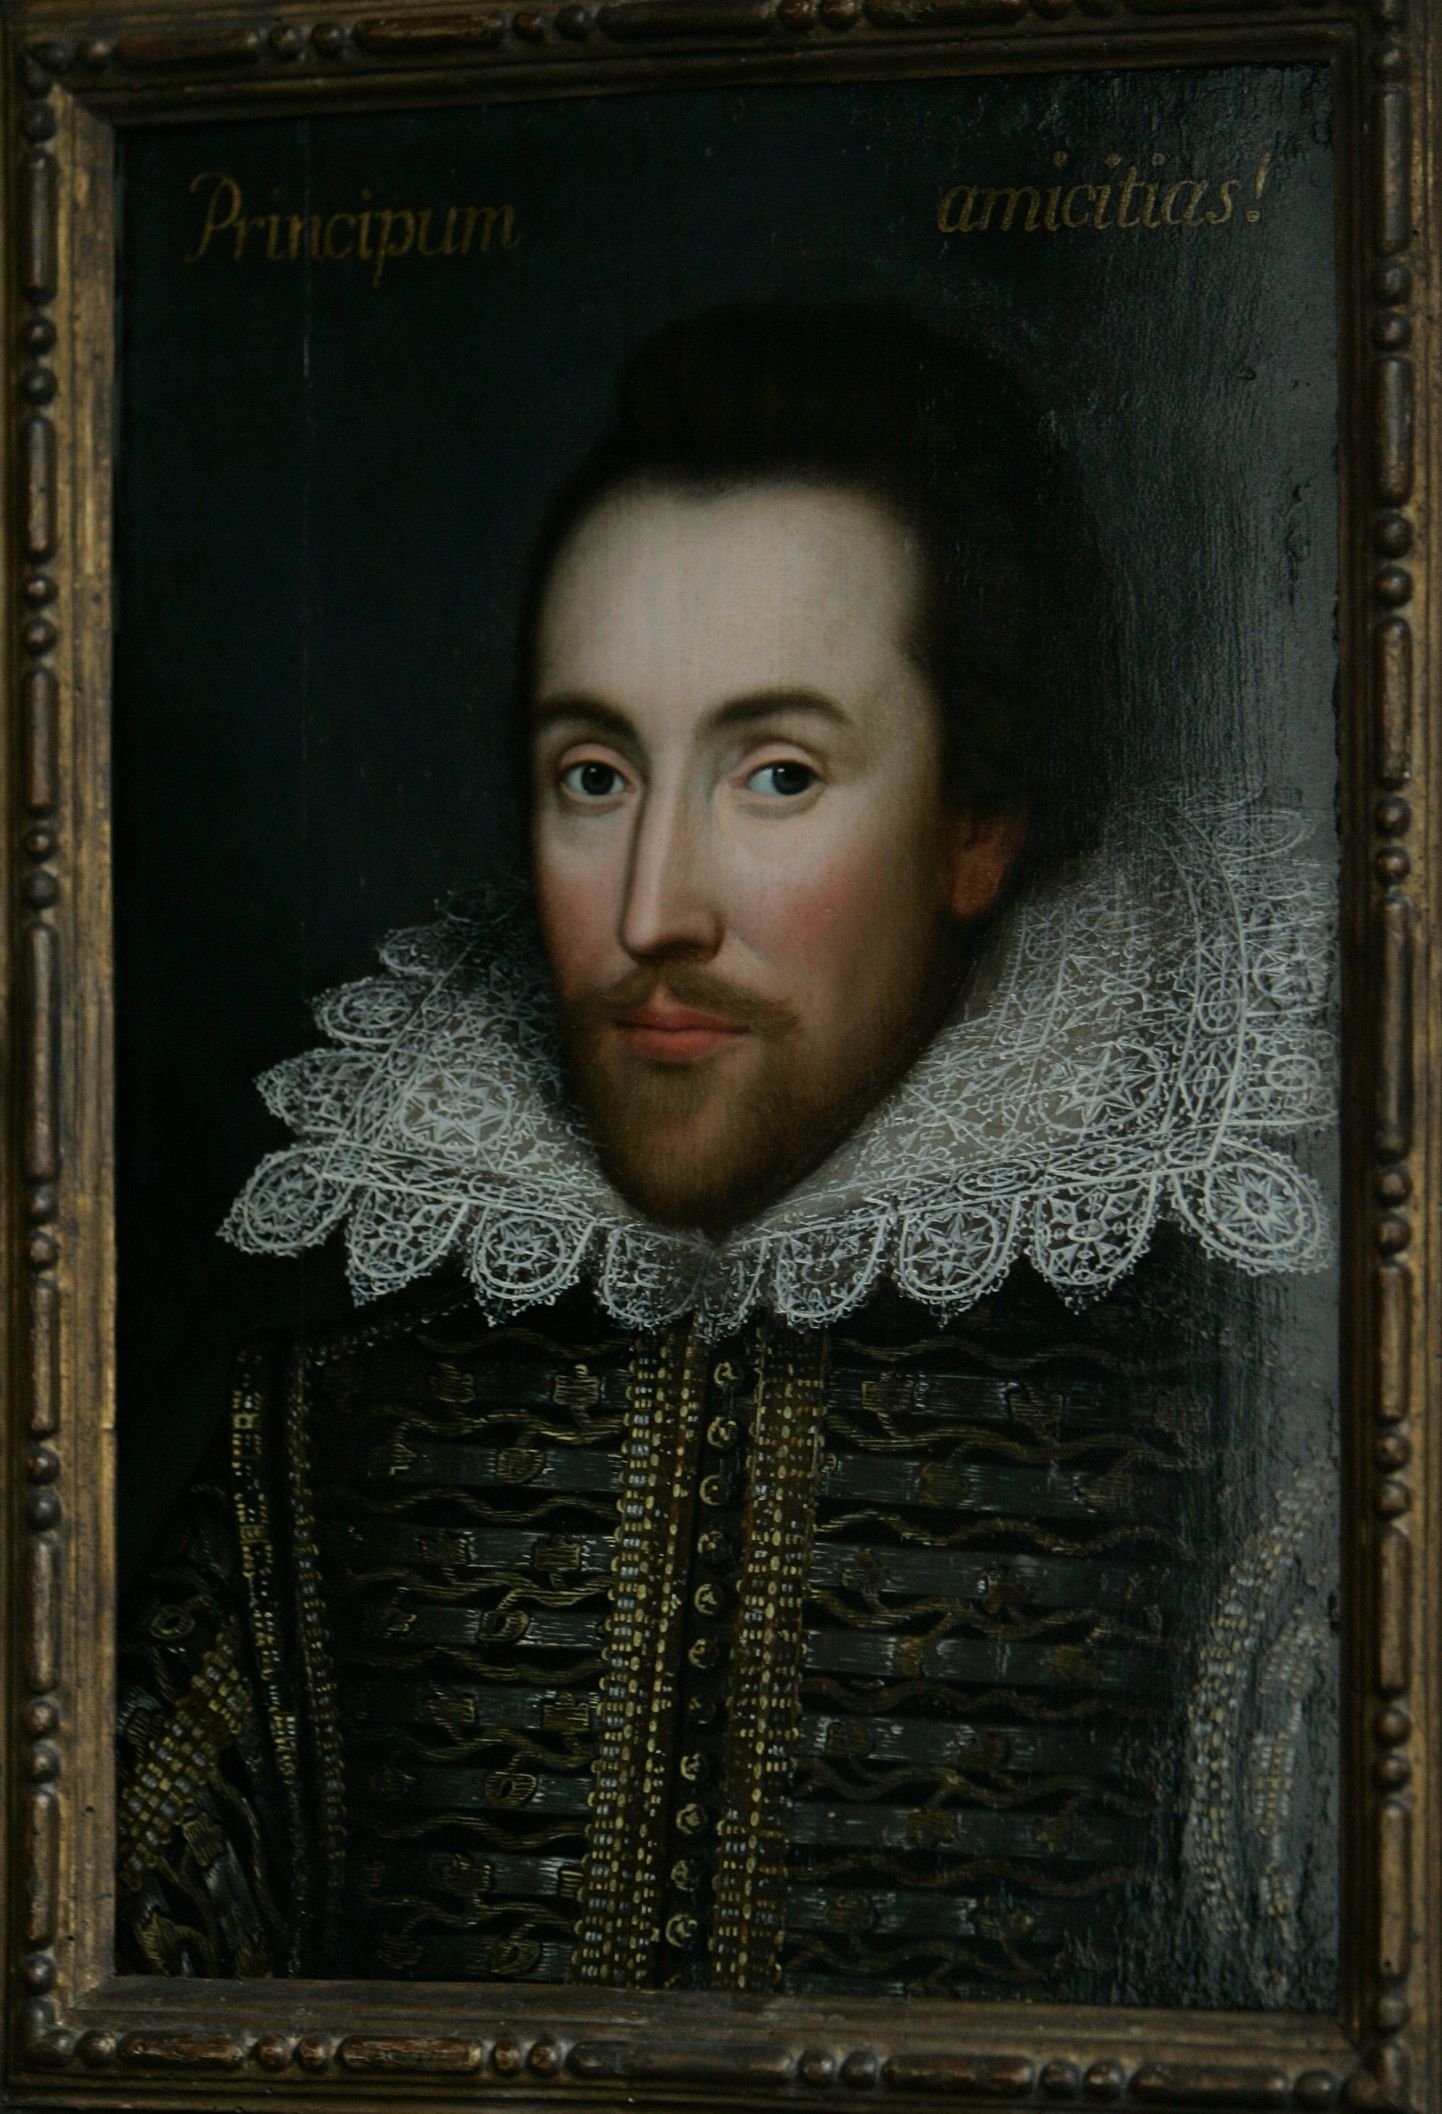 William Shakespeare (1564-1616).